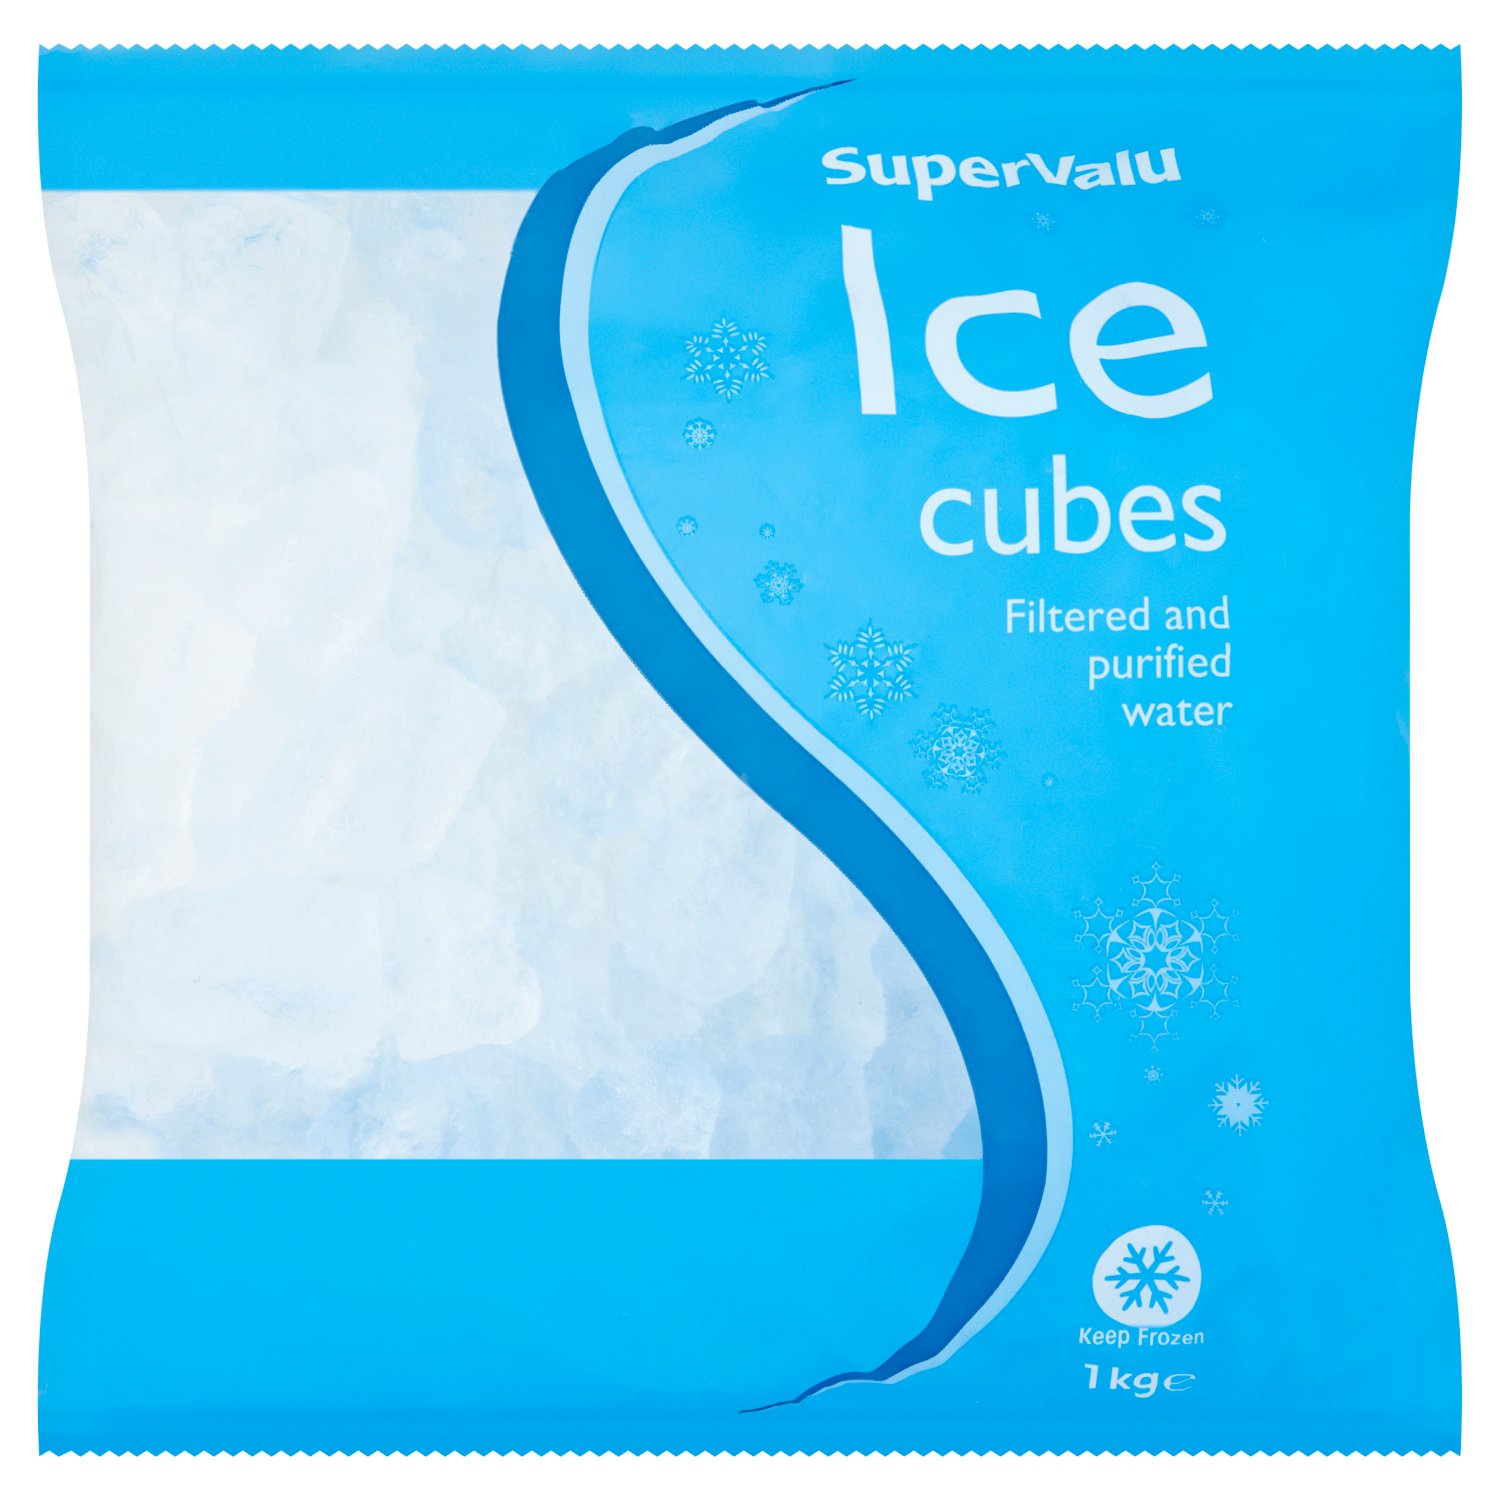 Supervalu Ice Cubes (1 kg)